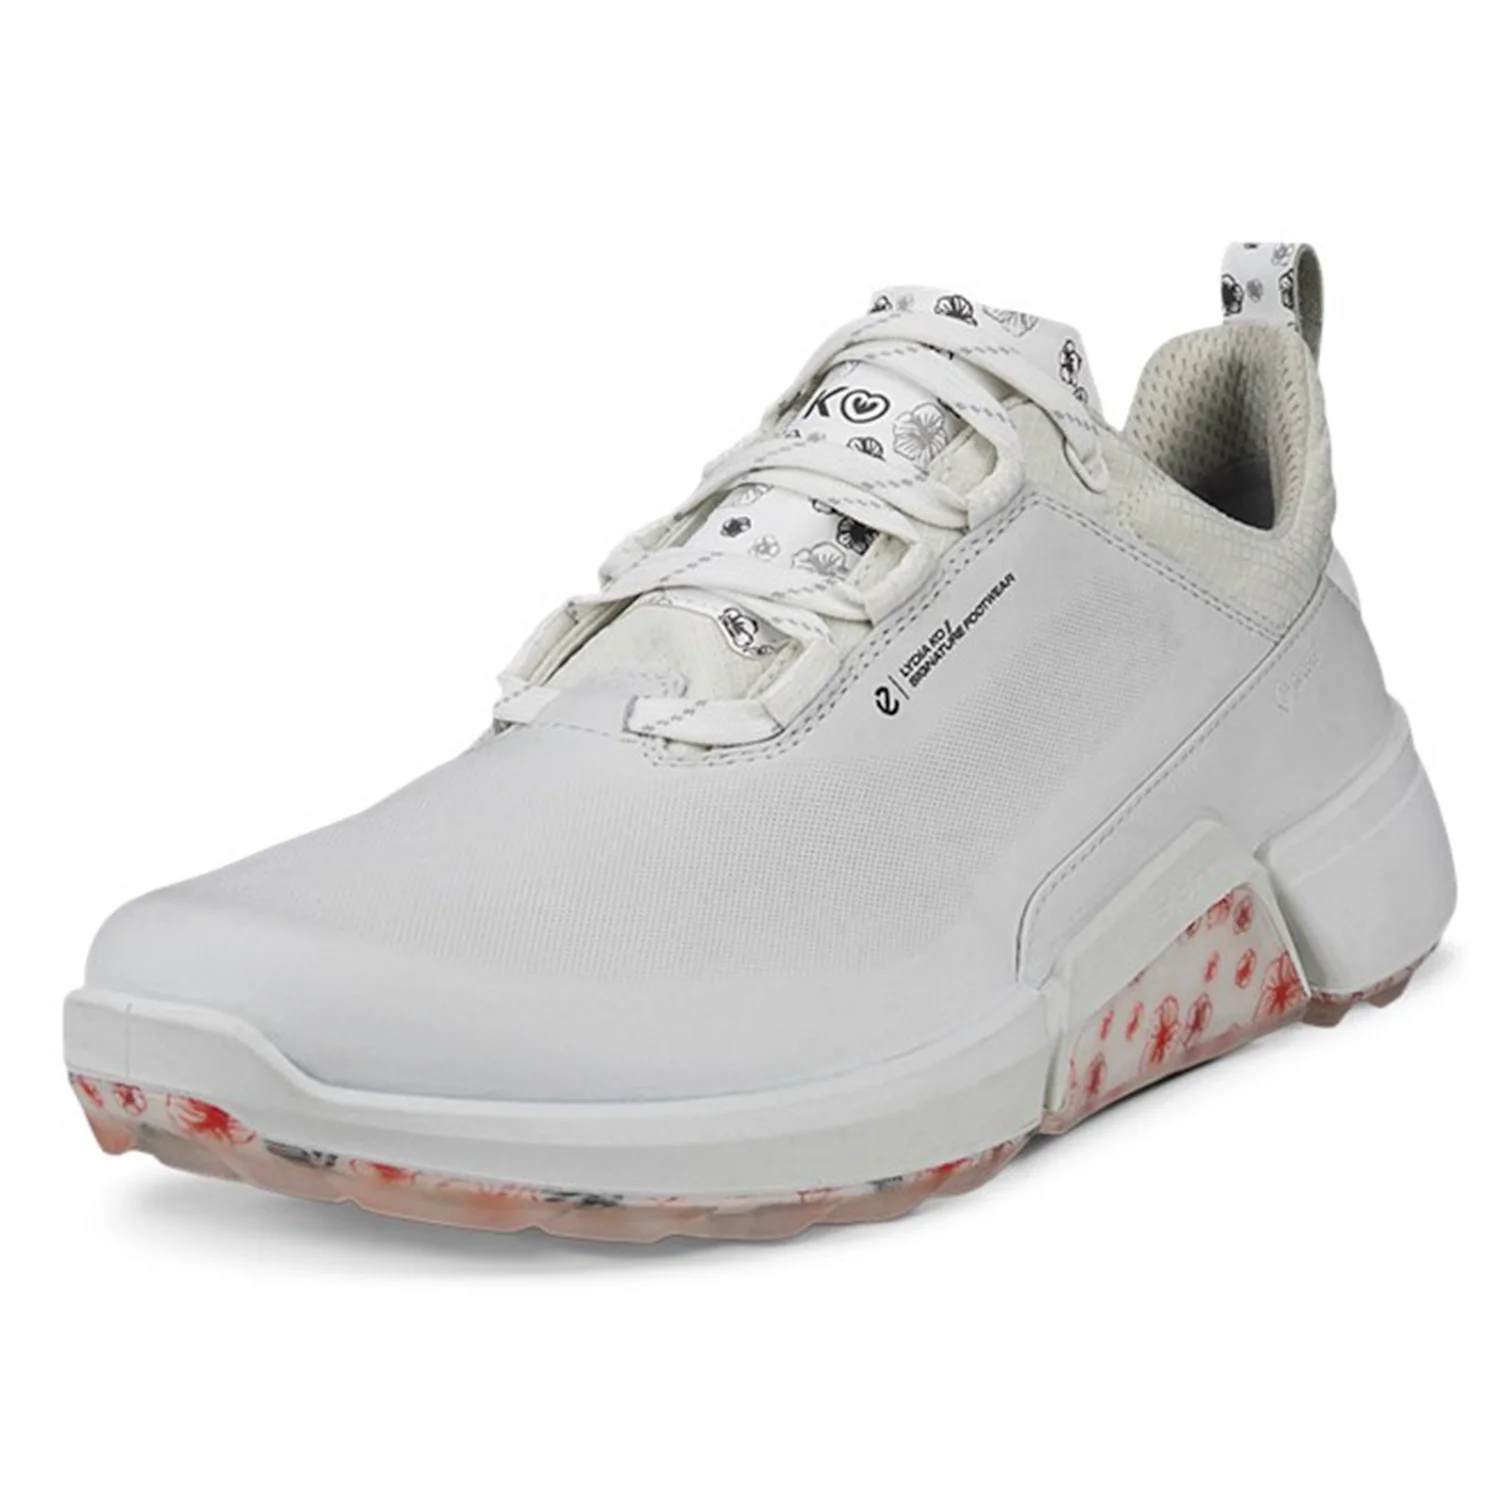 Levně ECCO Biom H4 dámské golfové boty, bílé